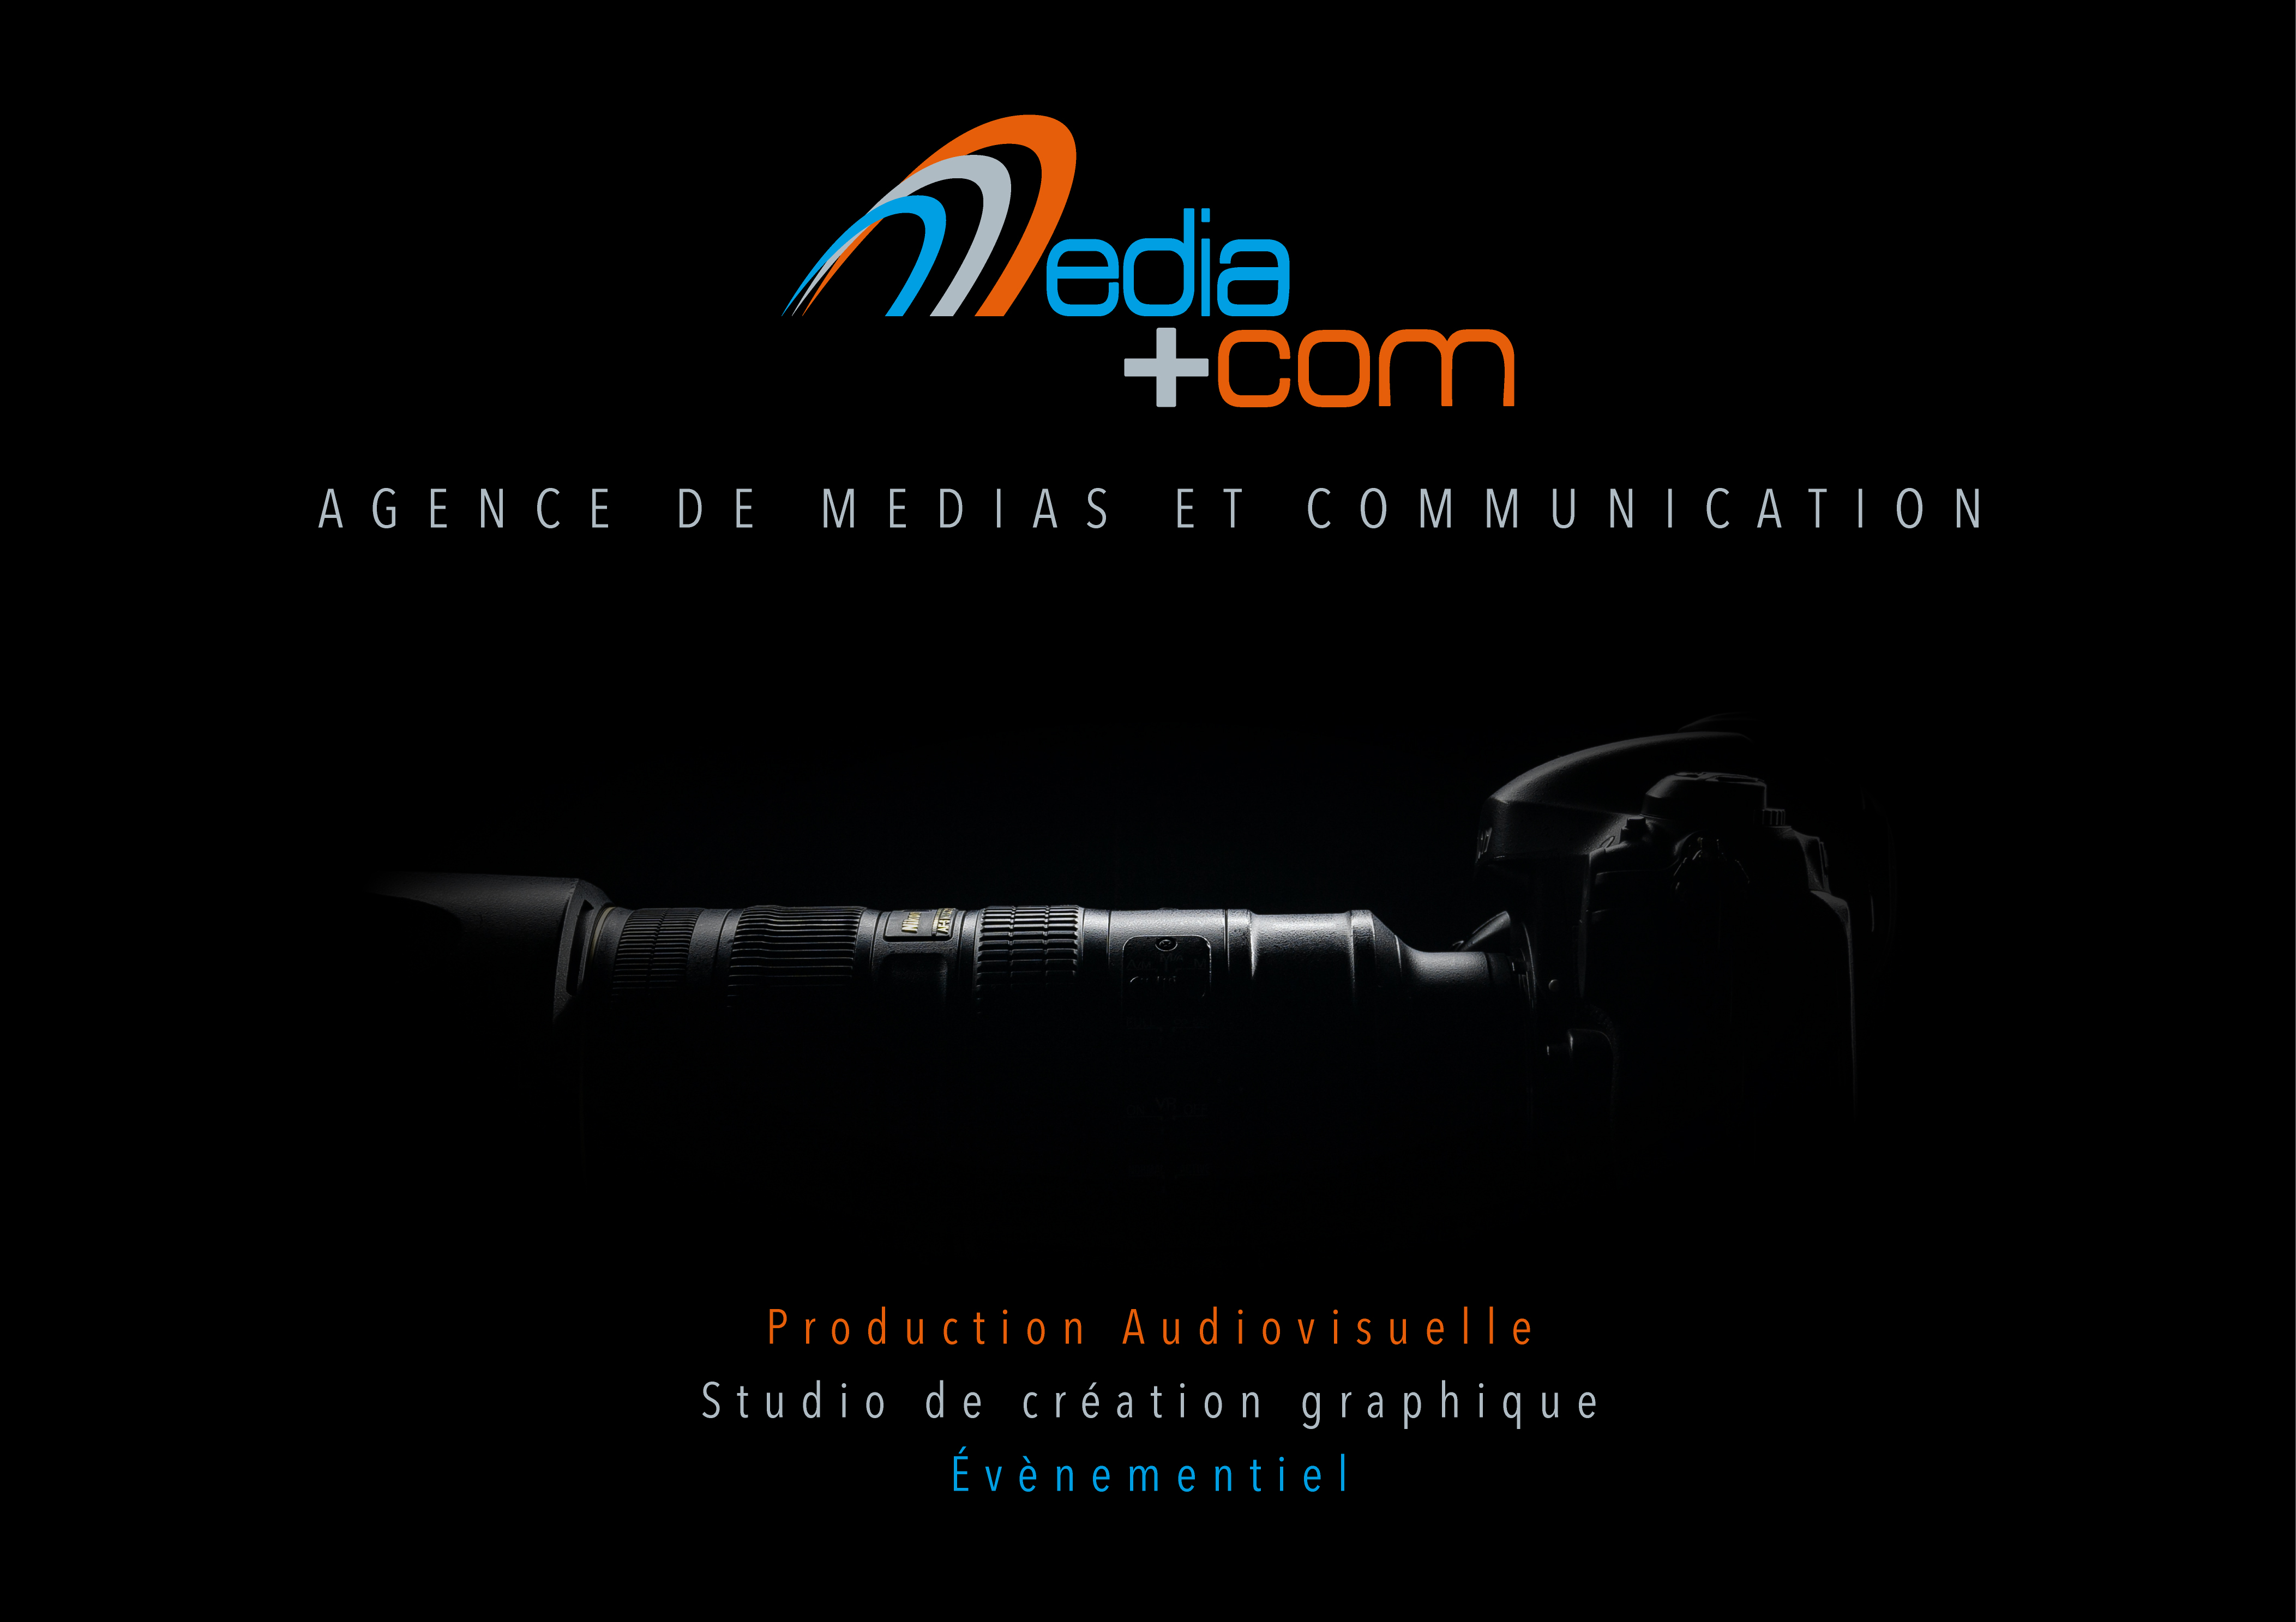 media+com